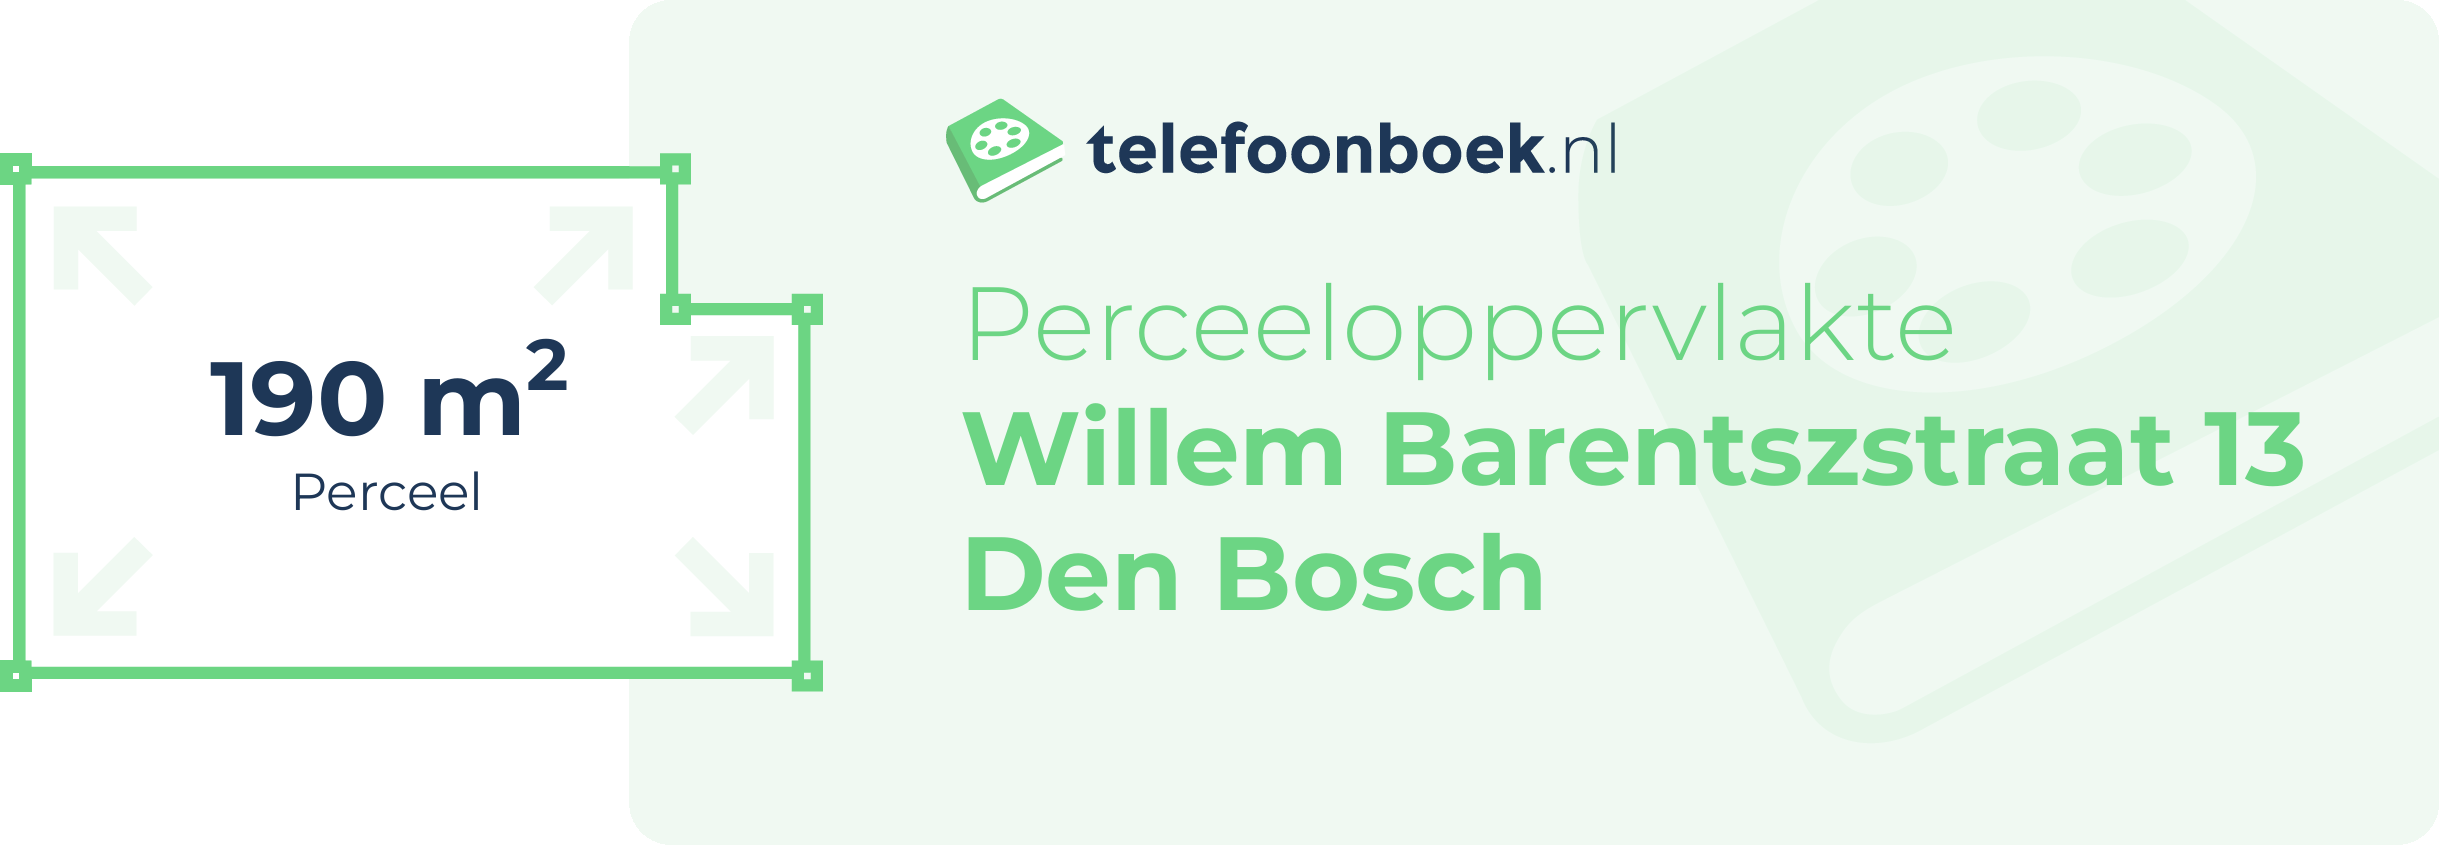 Perceeloppervlakte Willem Barentszstraat 13 Den Bosch